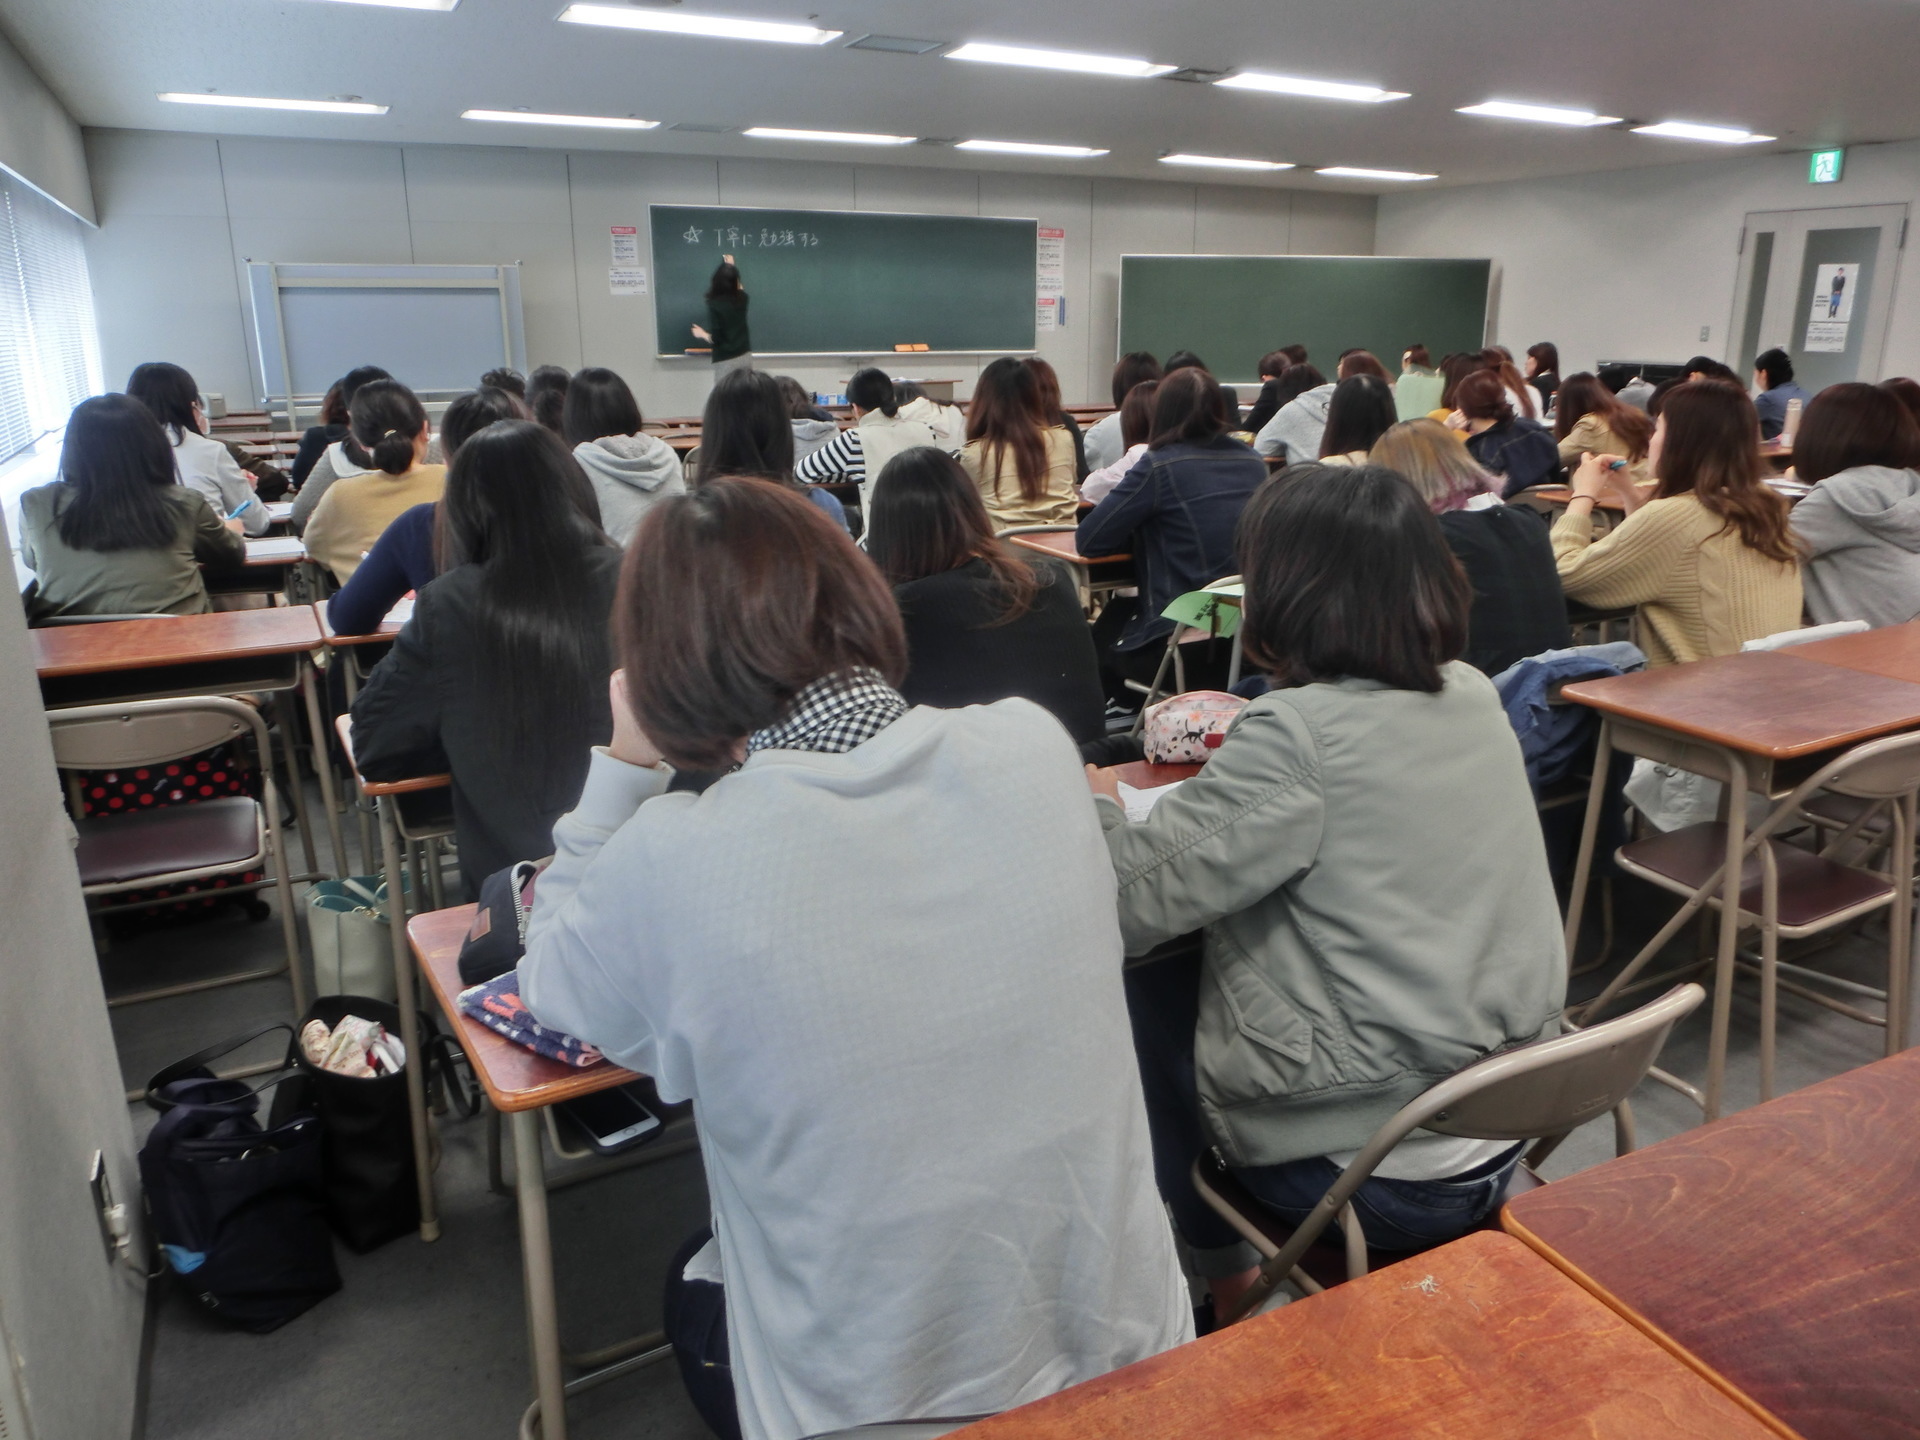 第107回看護師国家試験対策 第106回国試傾向分析会を実施しました 東京アカデミー熊本校 教員採用試験 看護師国家試験 公務員試験 のブログ